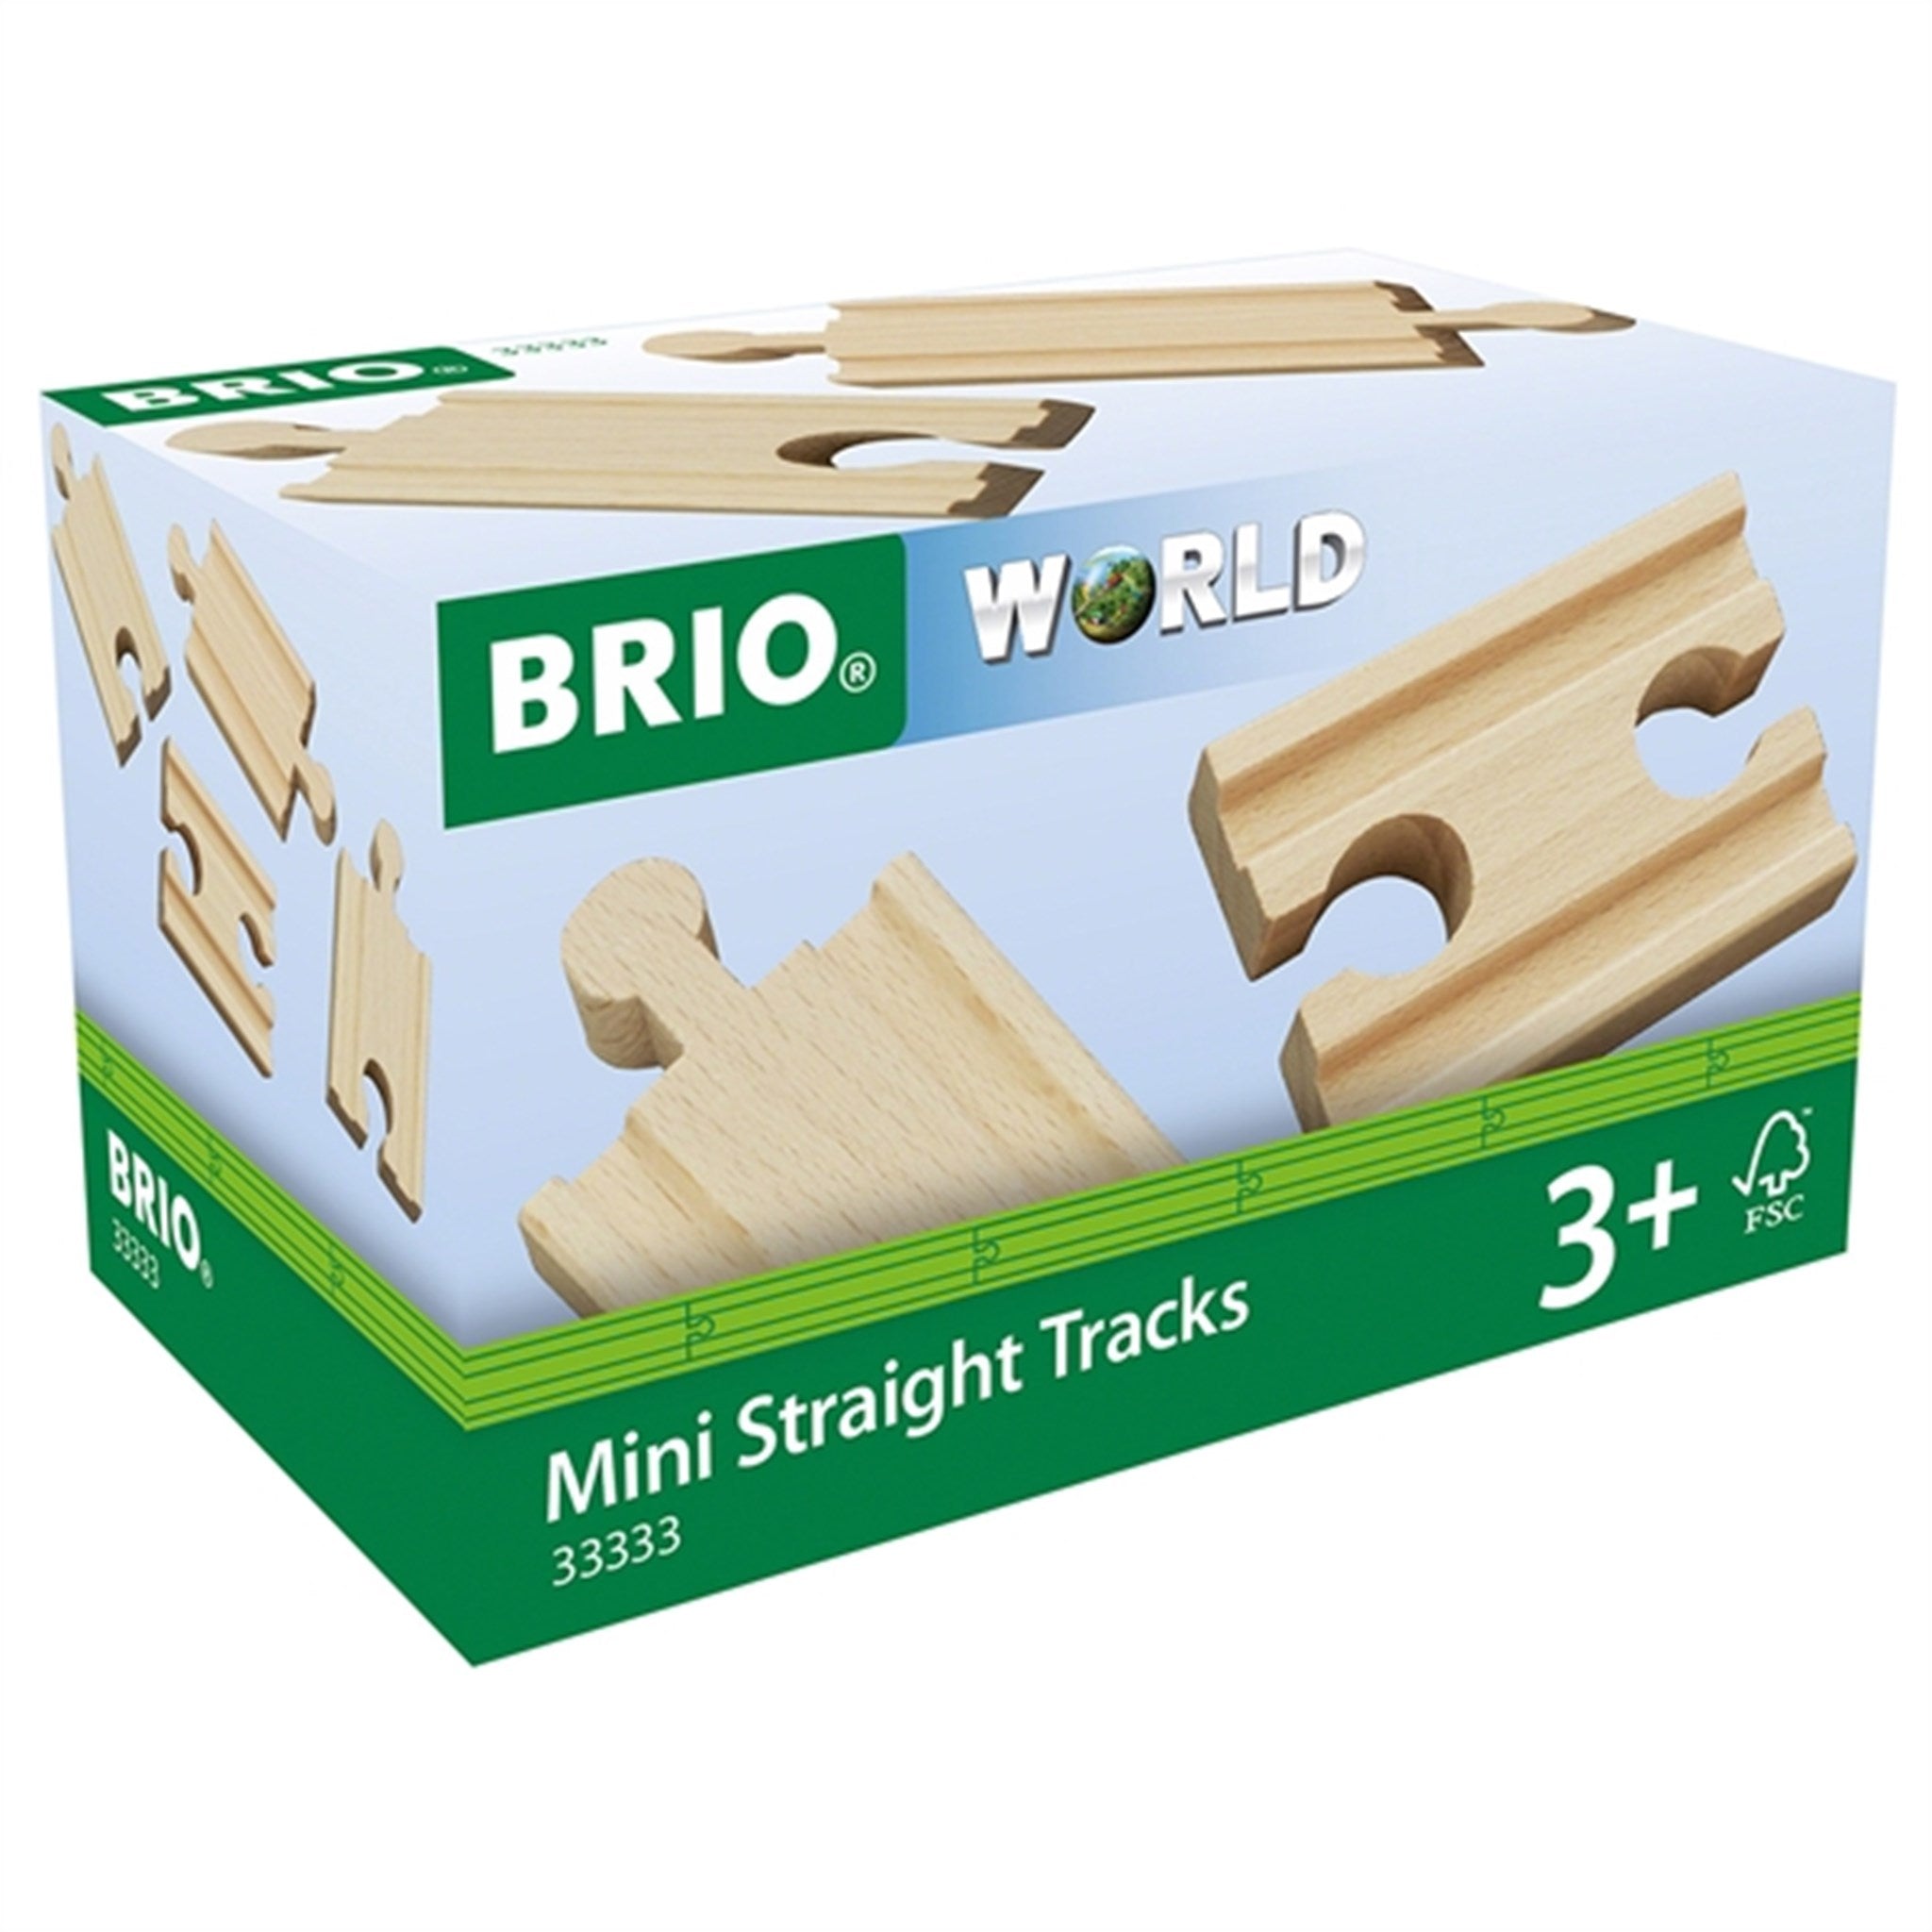 BRIO® Mini Straight Tracks 2